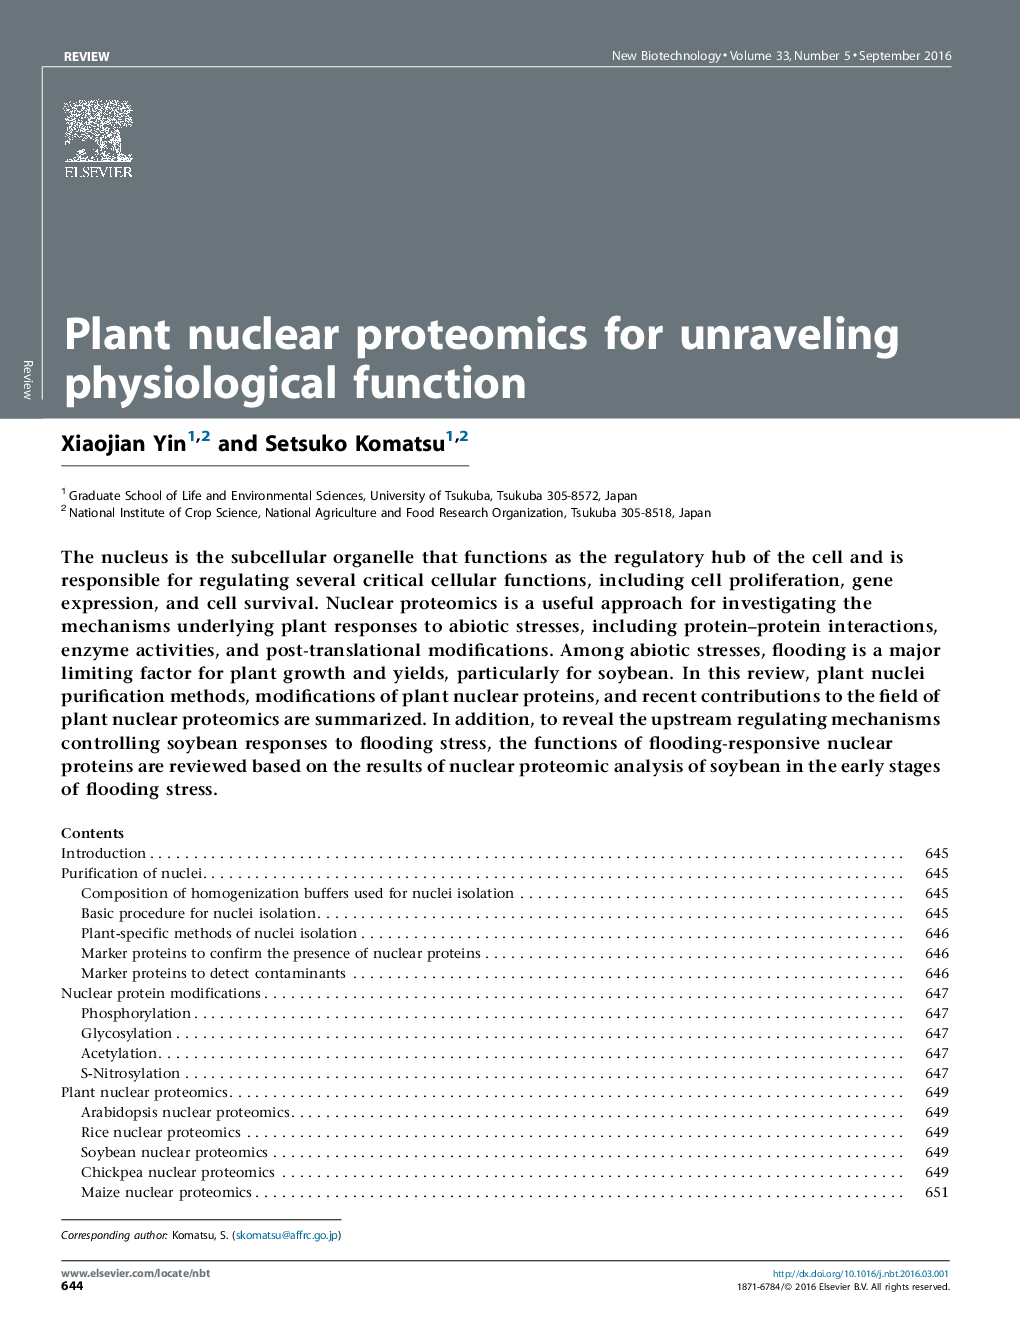 پروتئومیک گیاه هسته ای برای بازتولید عملکرد فیزیولوژیکی 